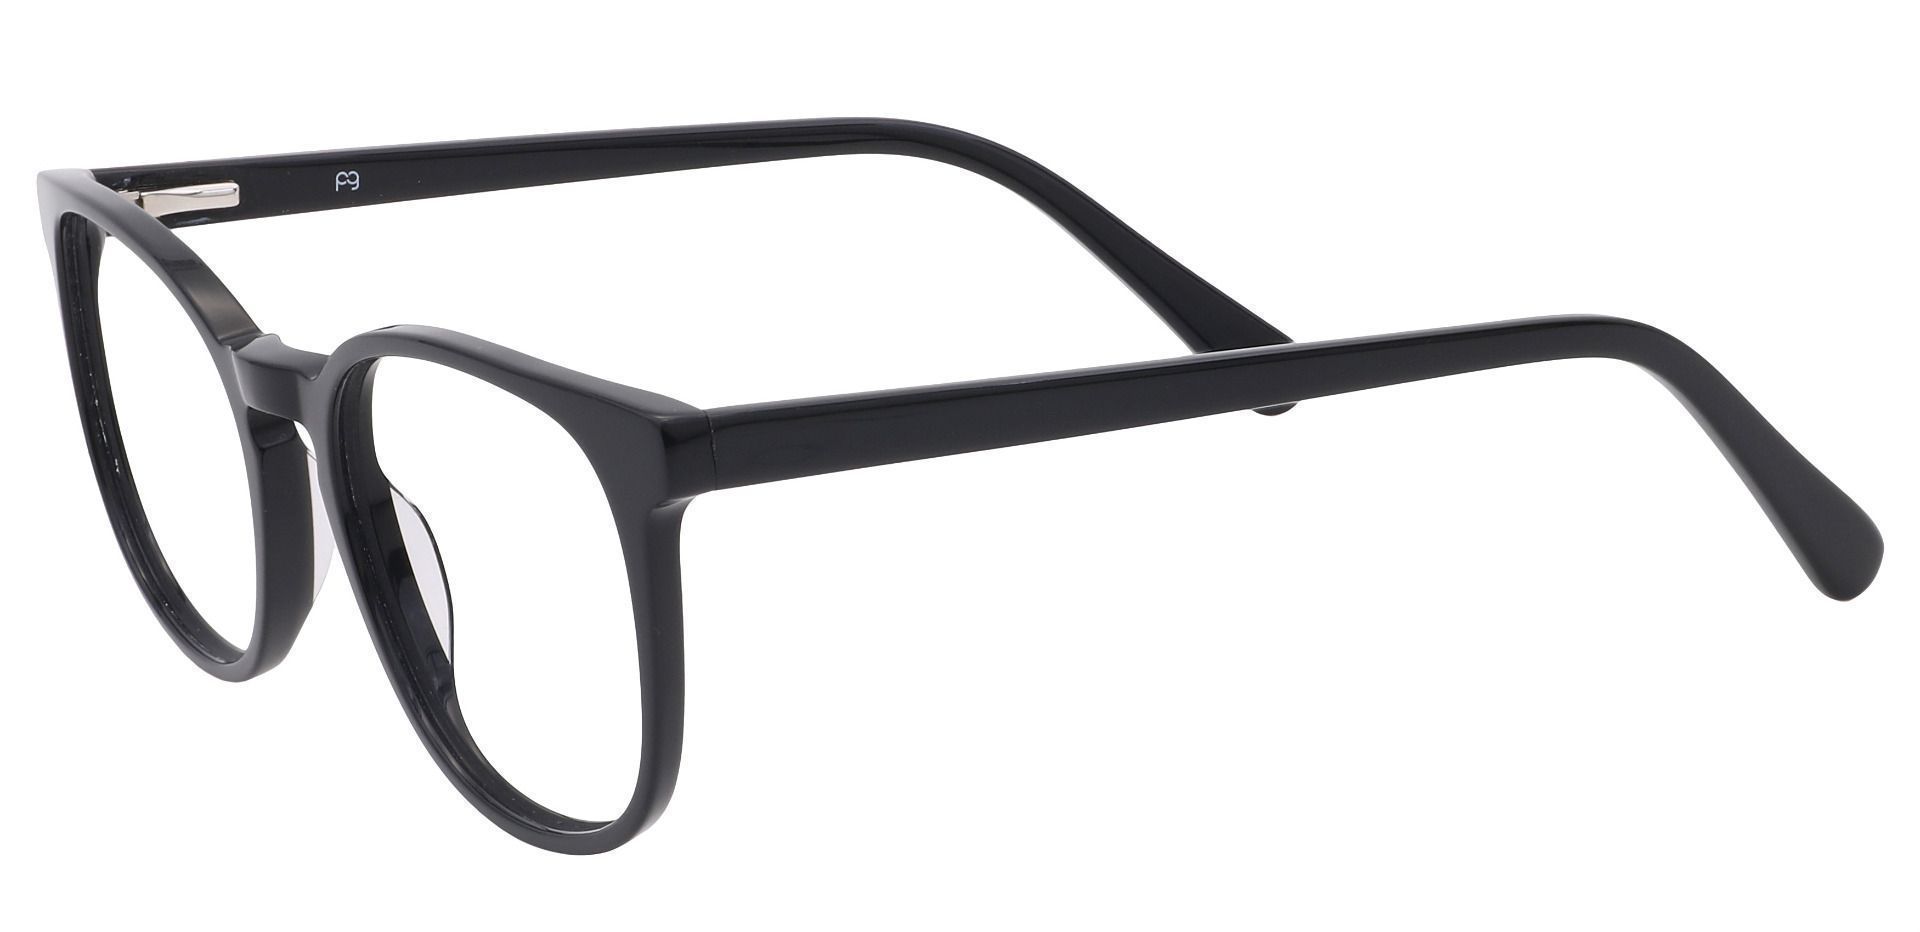 Nebula Round Eyeglasses Frame - Black